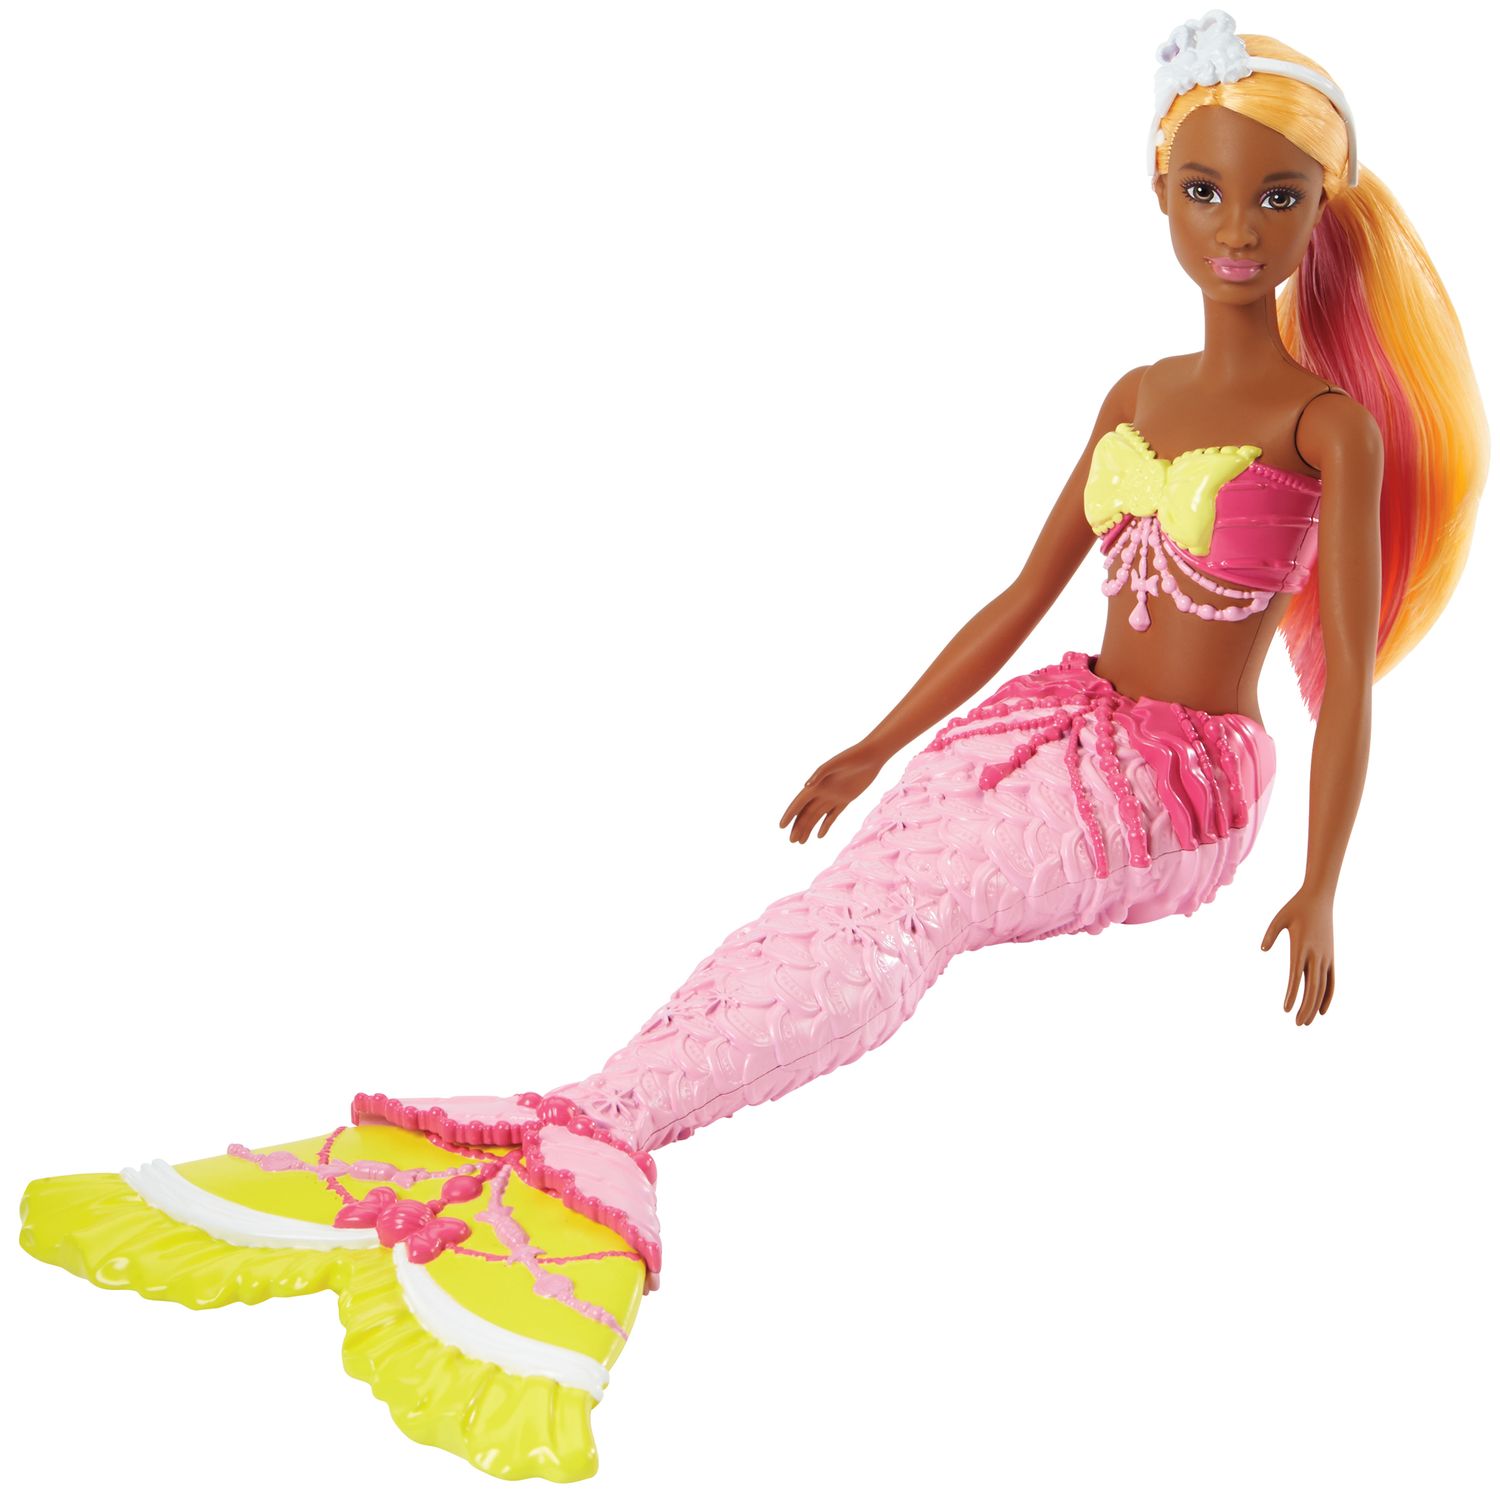 merman barbie doll